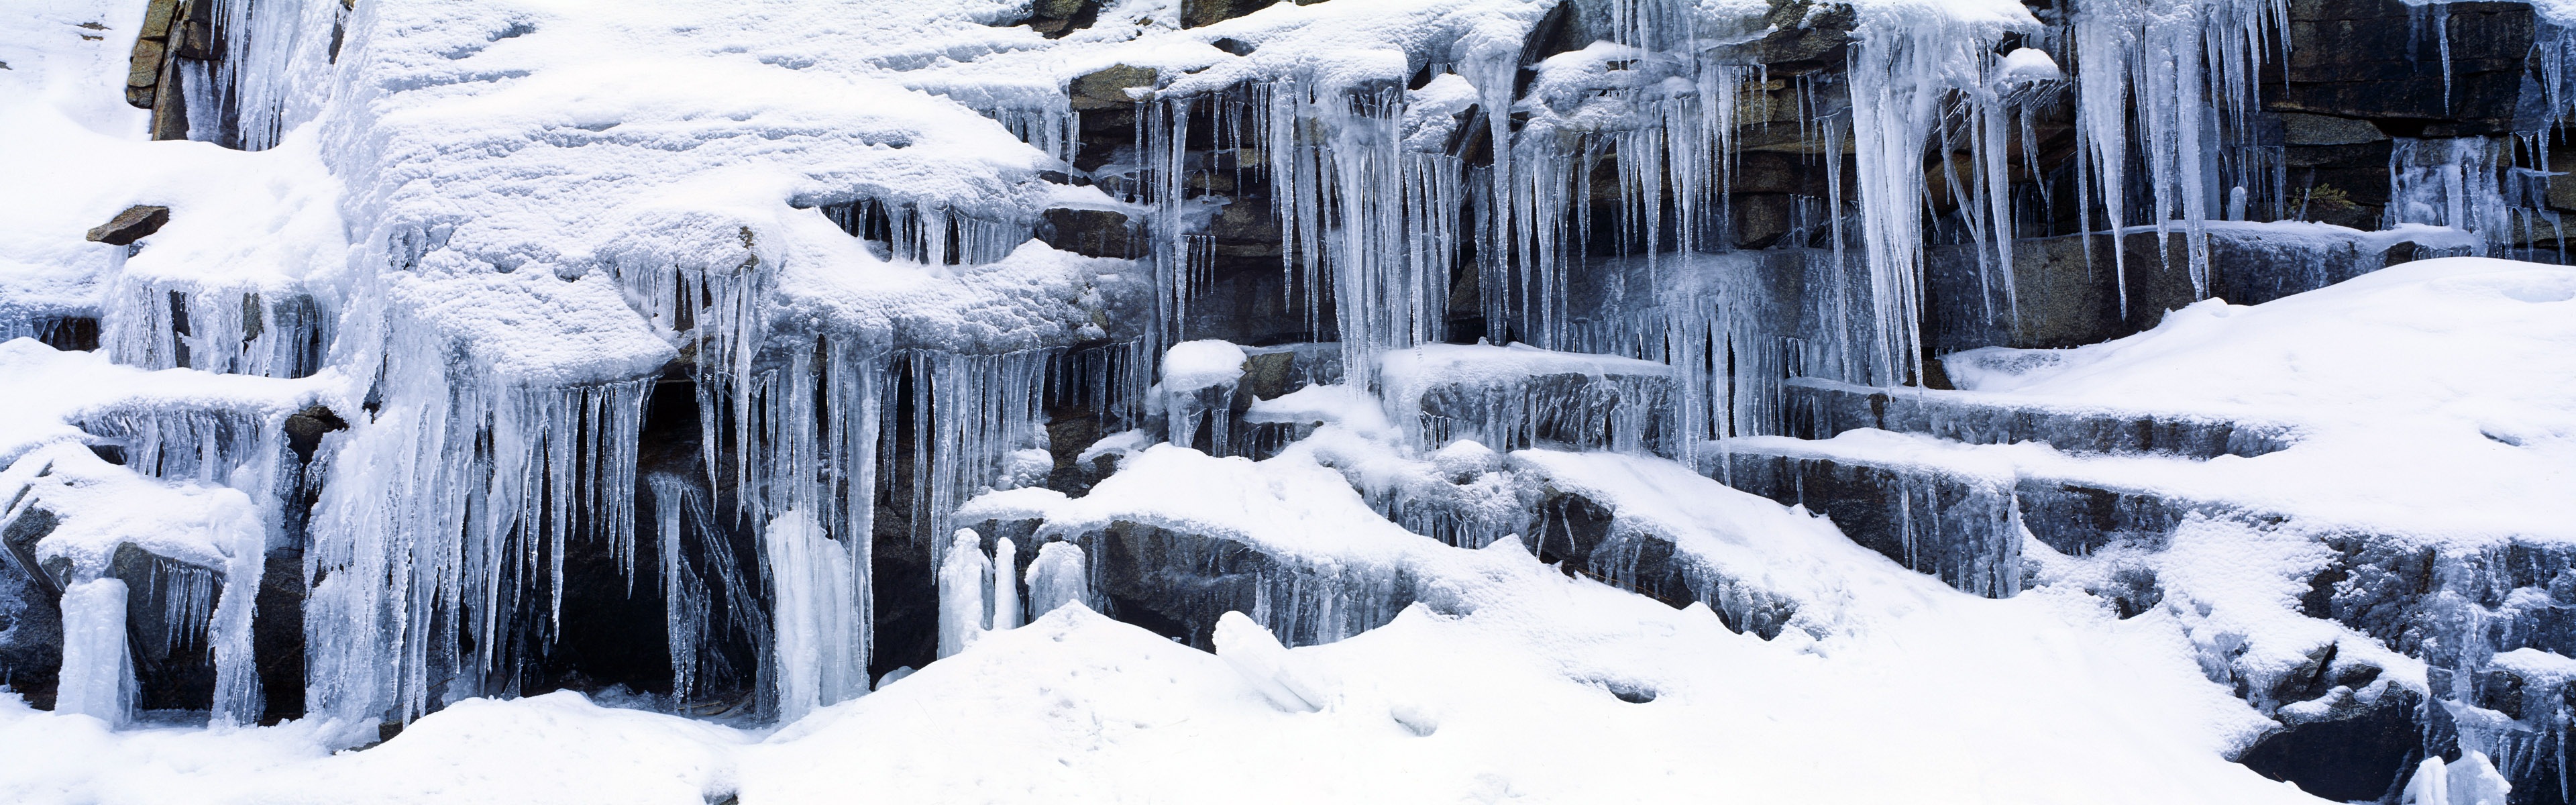 아름다운 추운 겨울 눈, 윈도우 8 파노라마 와이드 스크린 배경 화면 #7 - 3840x1200